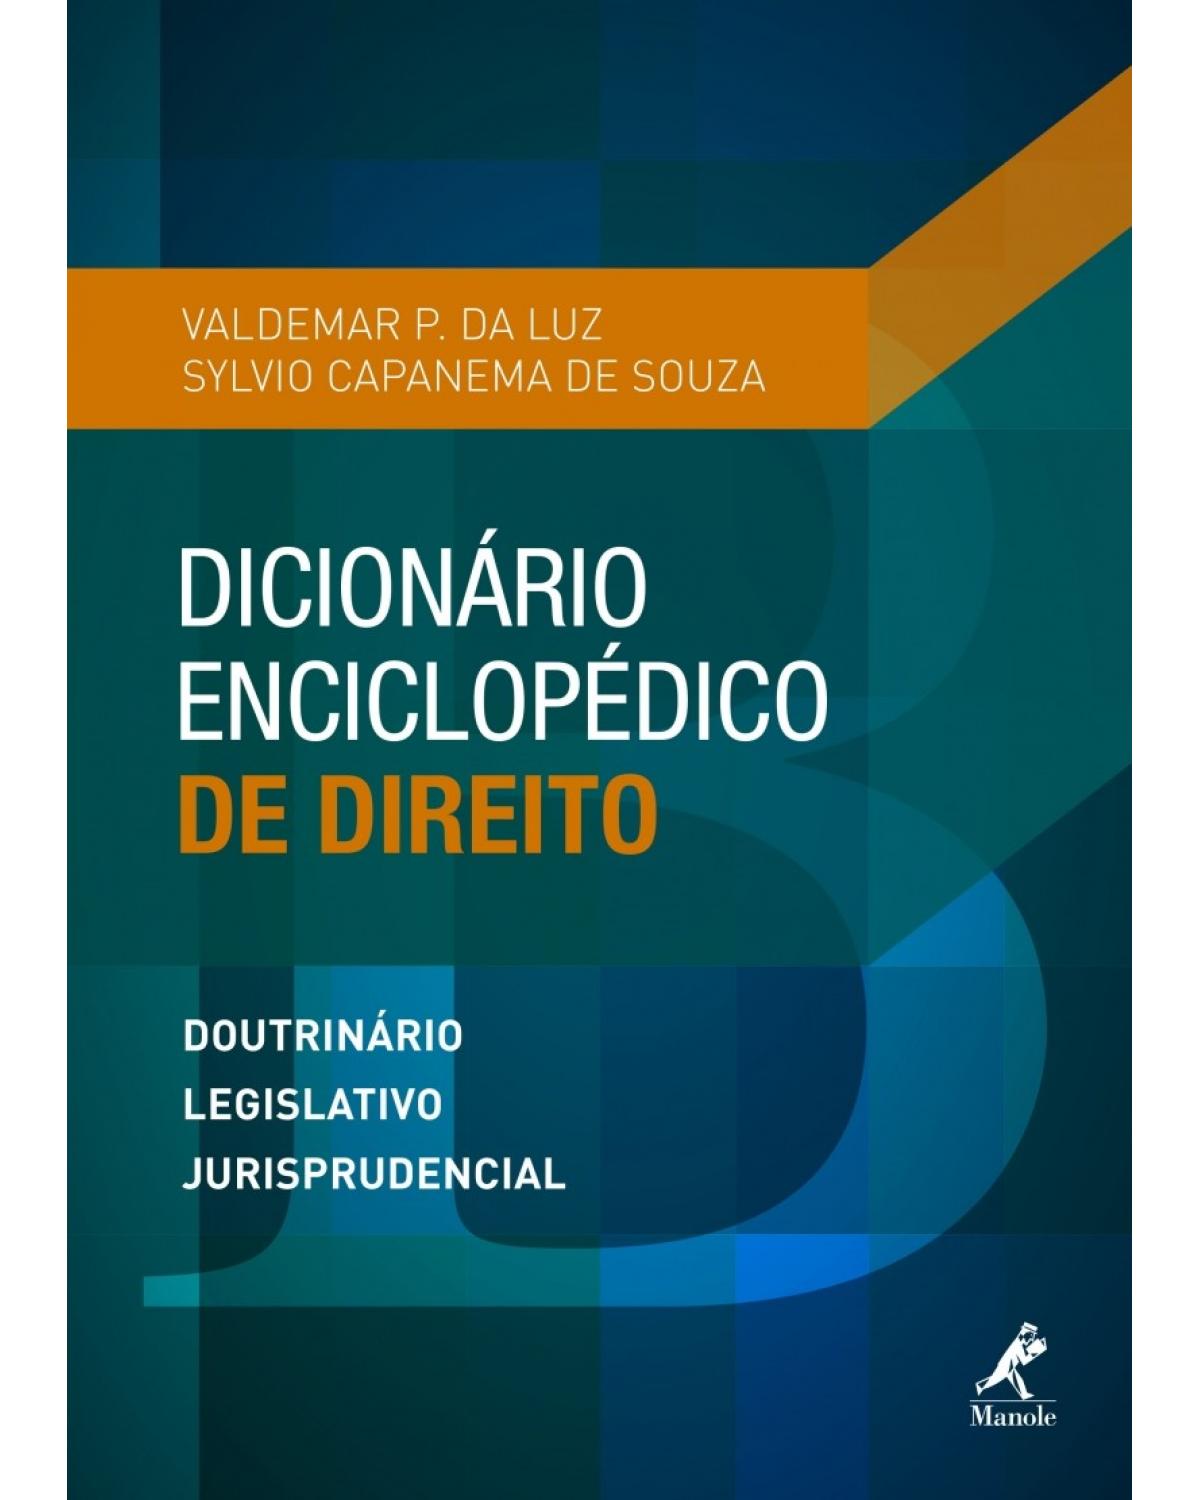 Dicionário enciclopédico de direito - doutrinário, legislativo, jurisprudencial - 1ª Edição | 2015